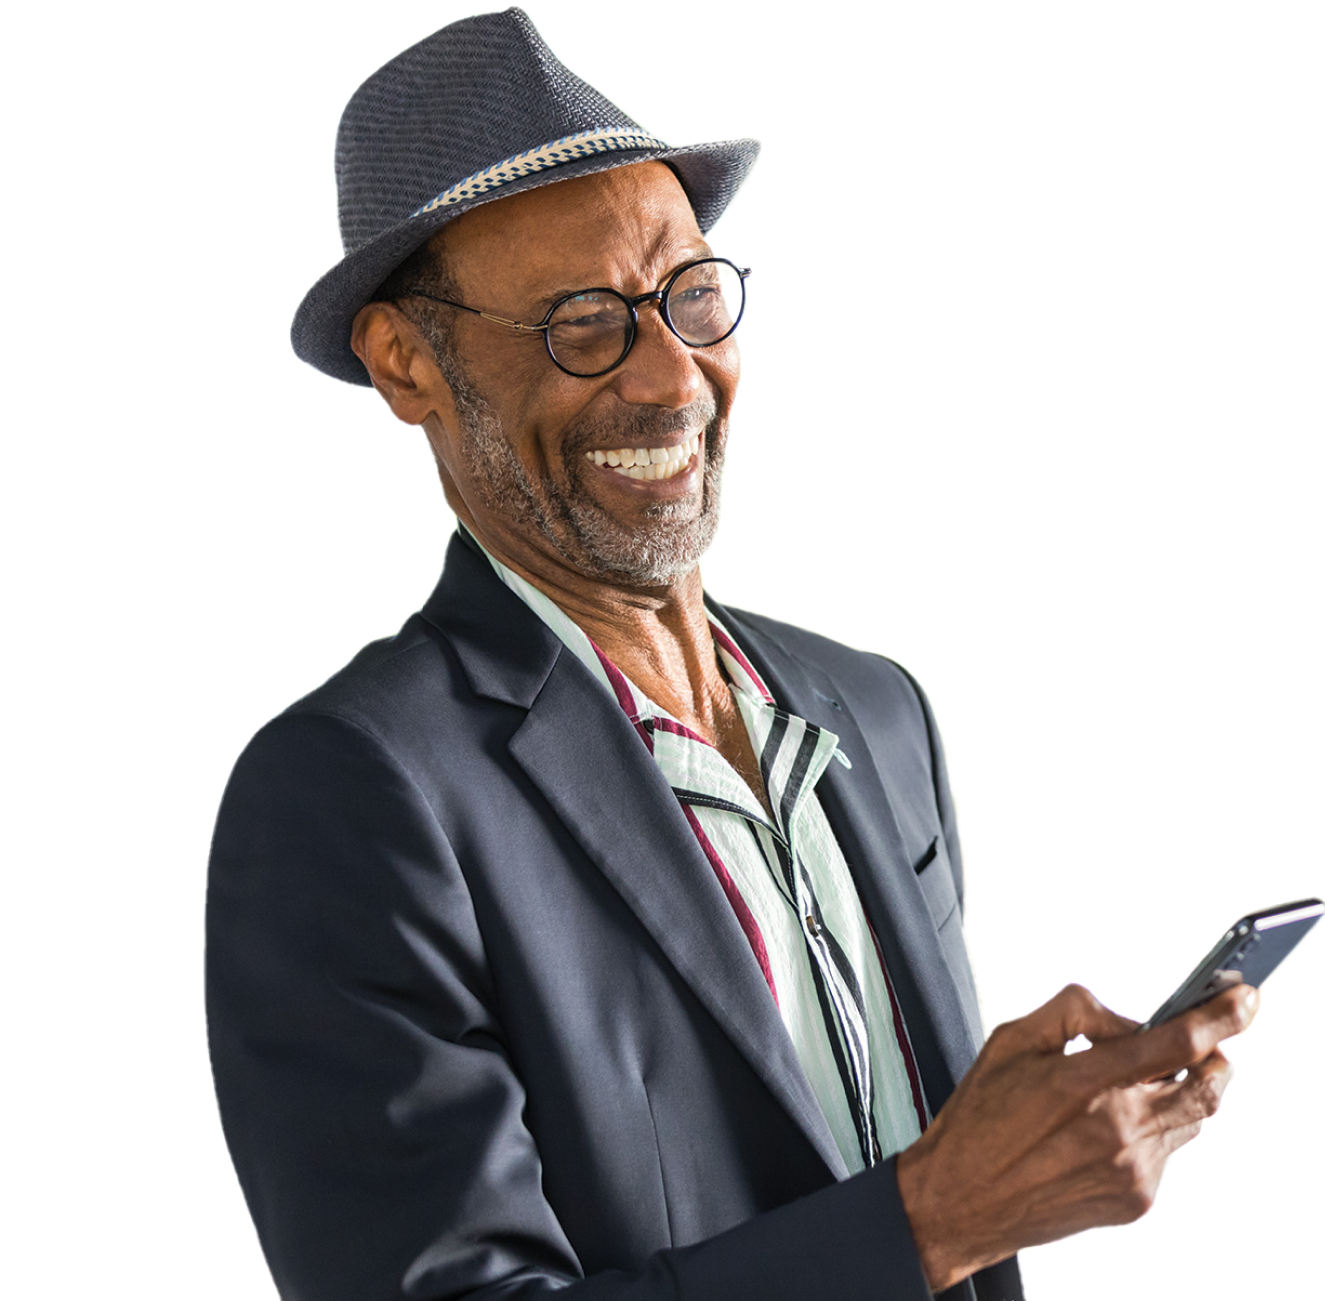 Hombre con gafas, traje y sombrero tipo fedora que ríe mientras mira su teléfono móvil.